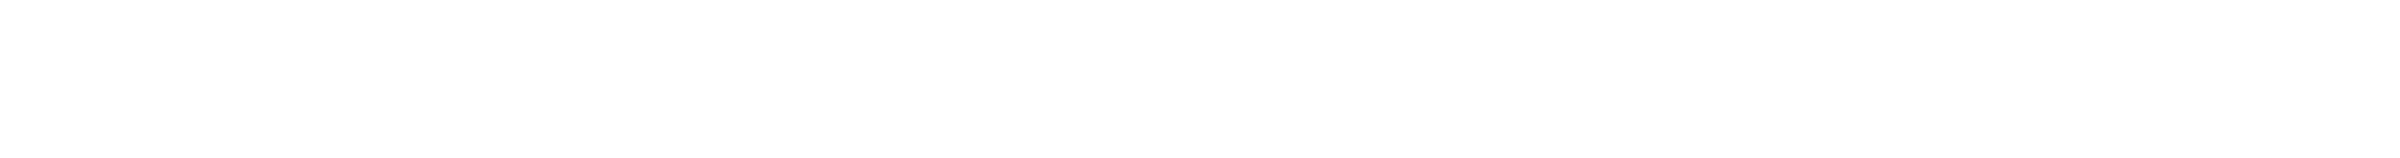 Usha Logo